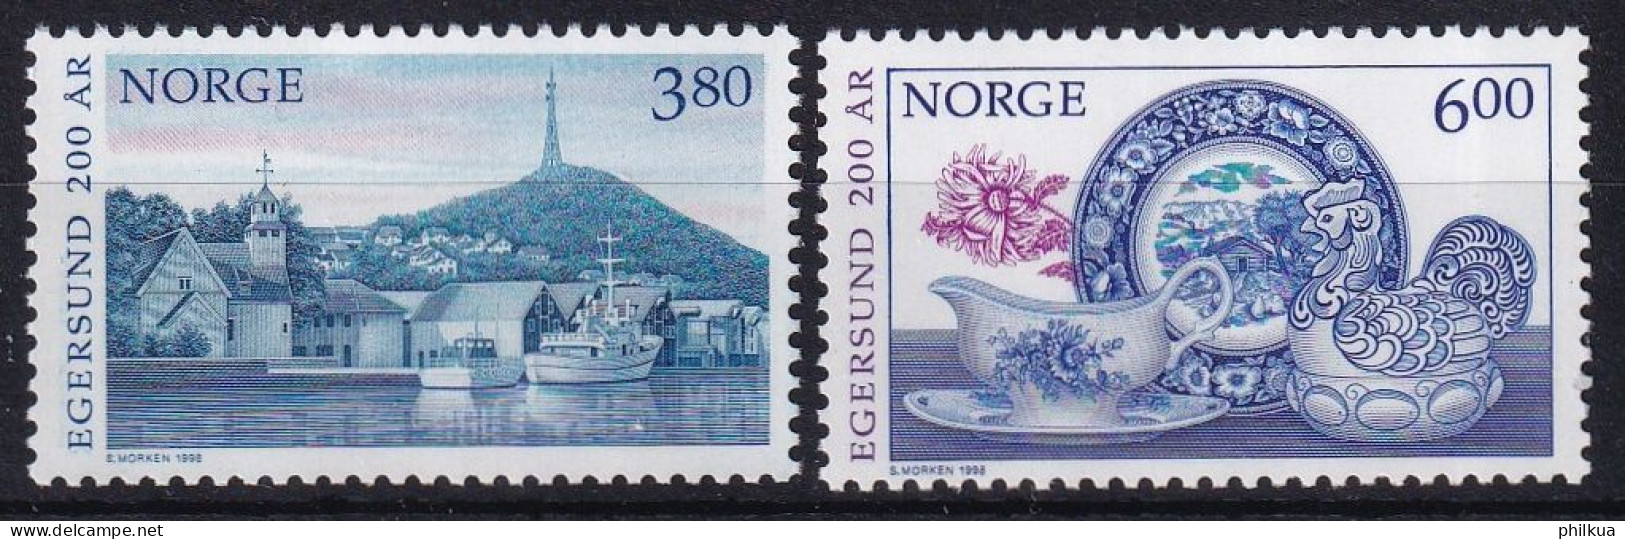 MiNr. 1278 - 1279 Norwegen       1998, 20. April. 200 Jahre Stadt Egersund - Postfrisch/**/MNH - Nuevos